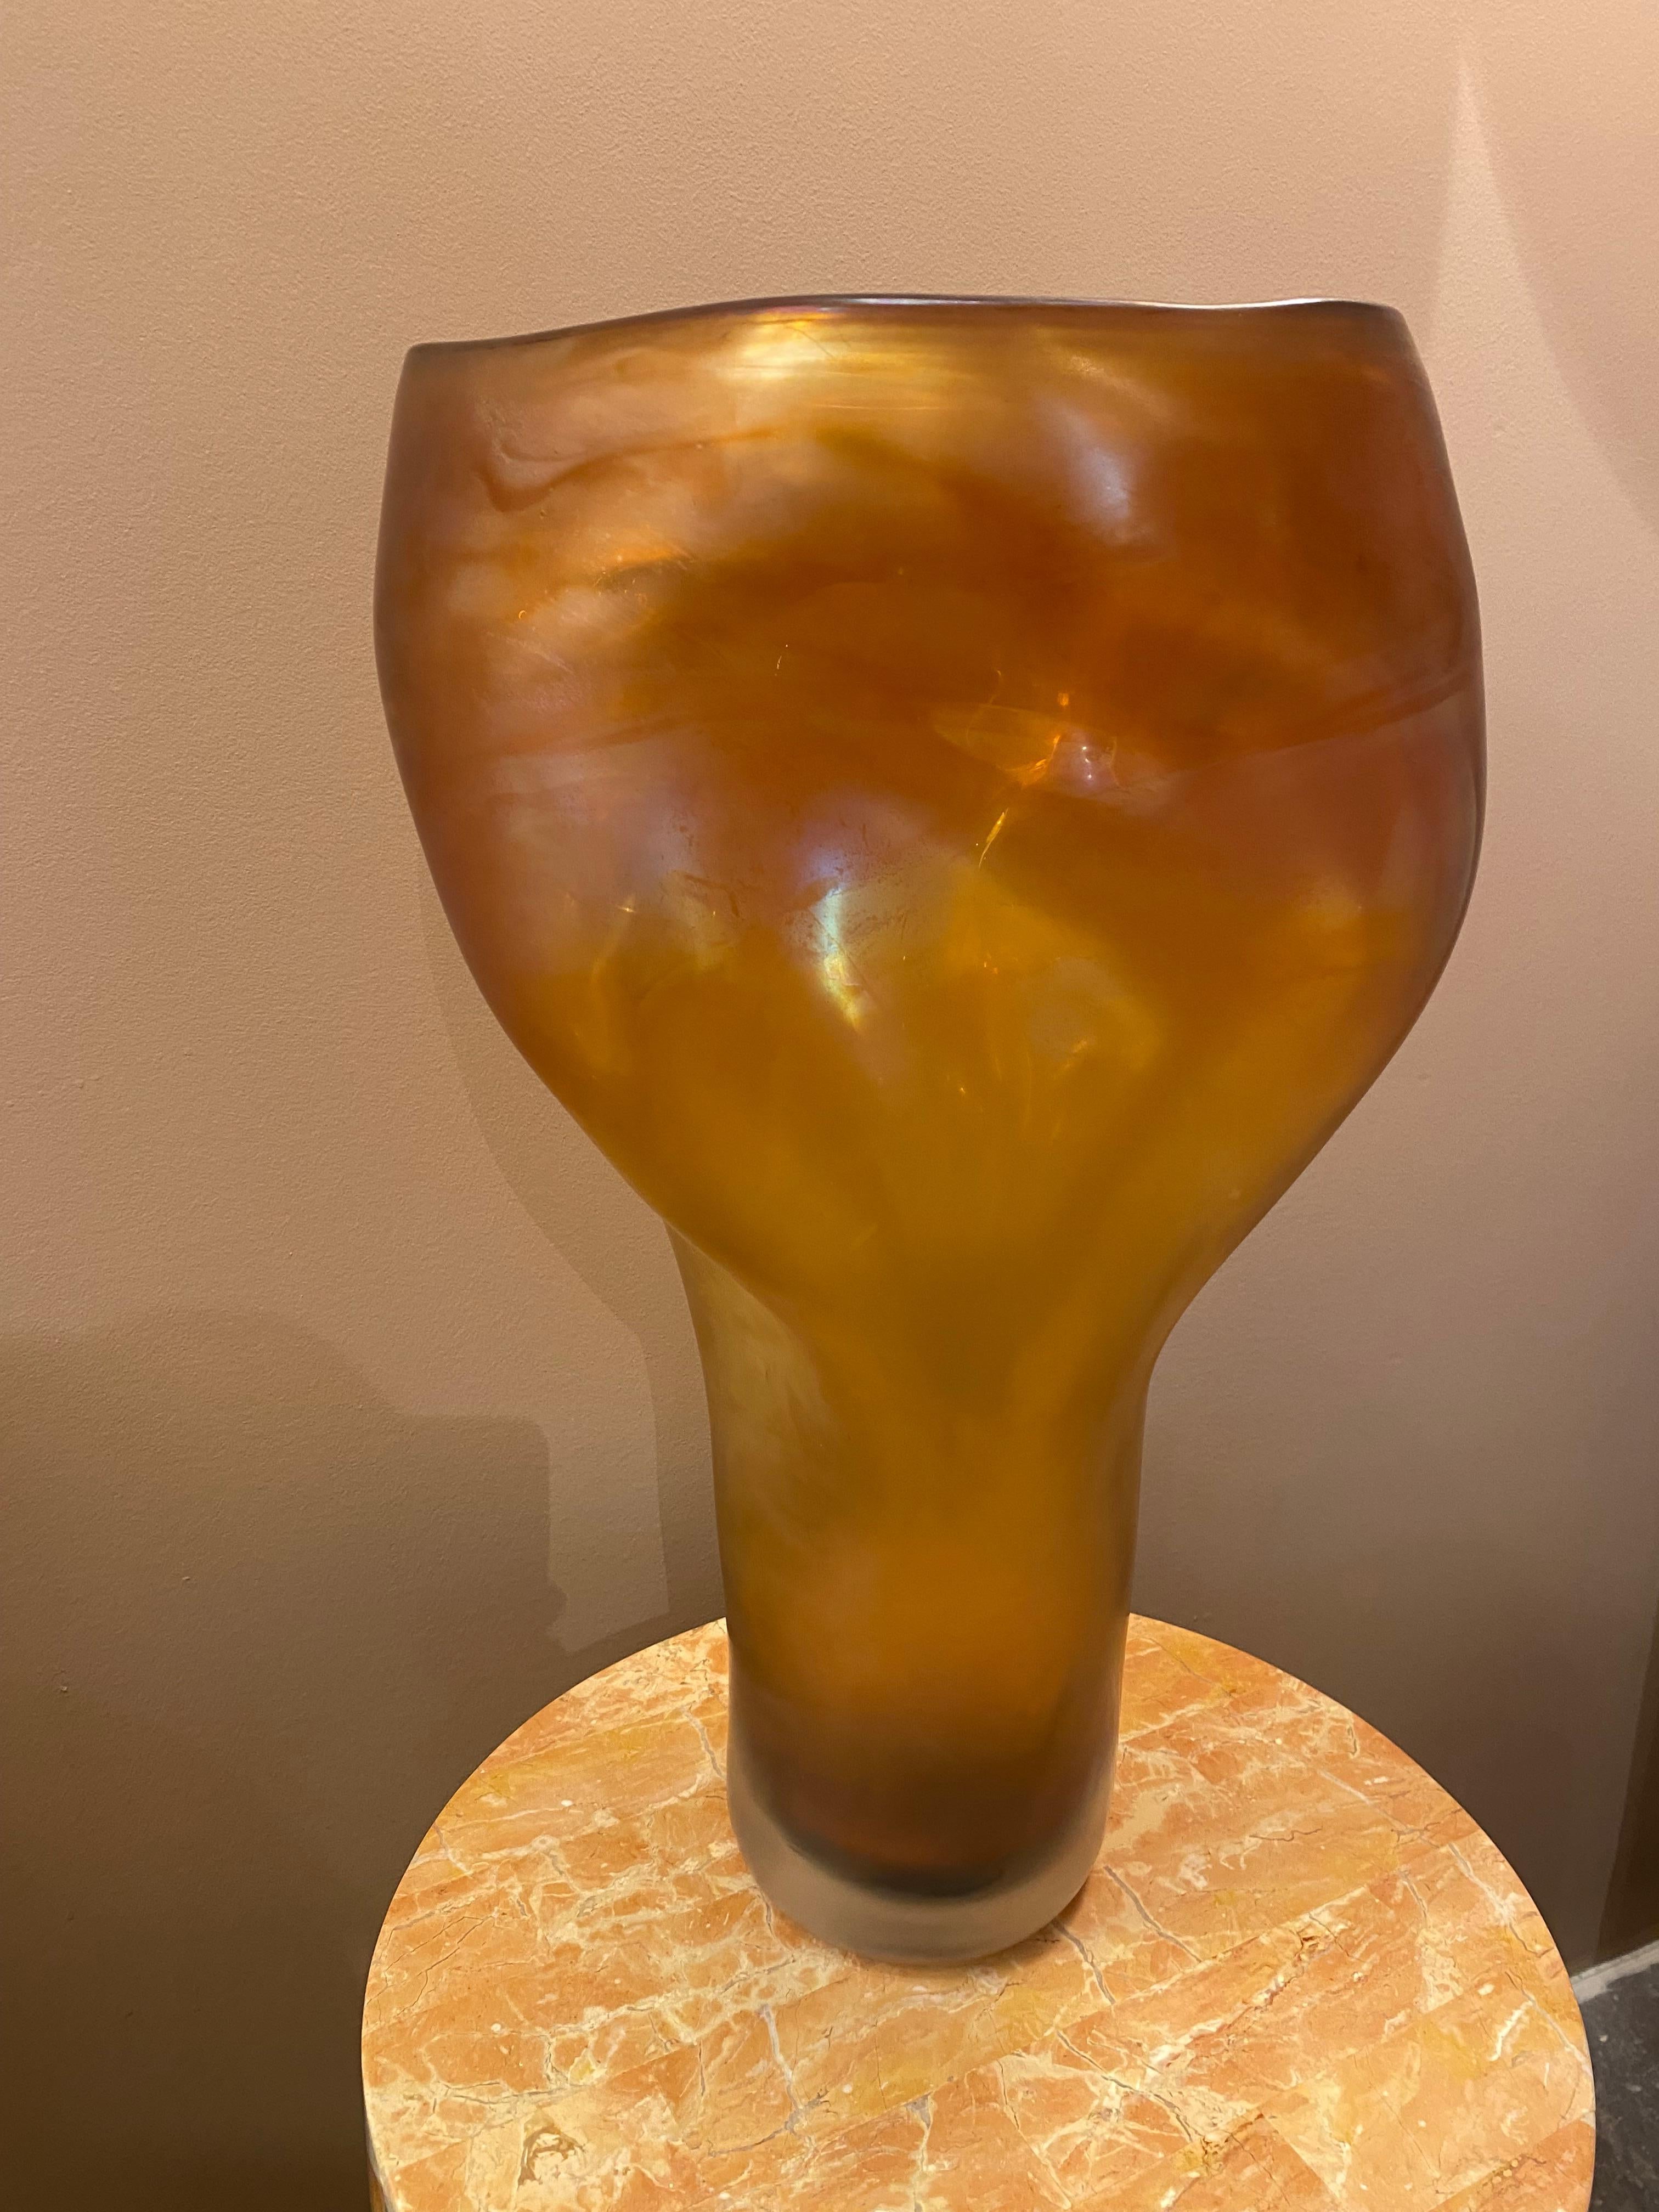 Die Vase ALLUNGATO wird von Massimo Micheluzzi mit dem Verfahren der Iridazione (schillernde Oberfläche) hergestellt, das dem Glas einen visuellen, perlenartigen Effekt verleiht. Dieser chemische Prozess wird ausgelöst, wenn das Glas noch weich und